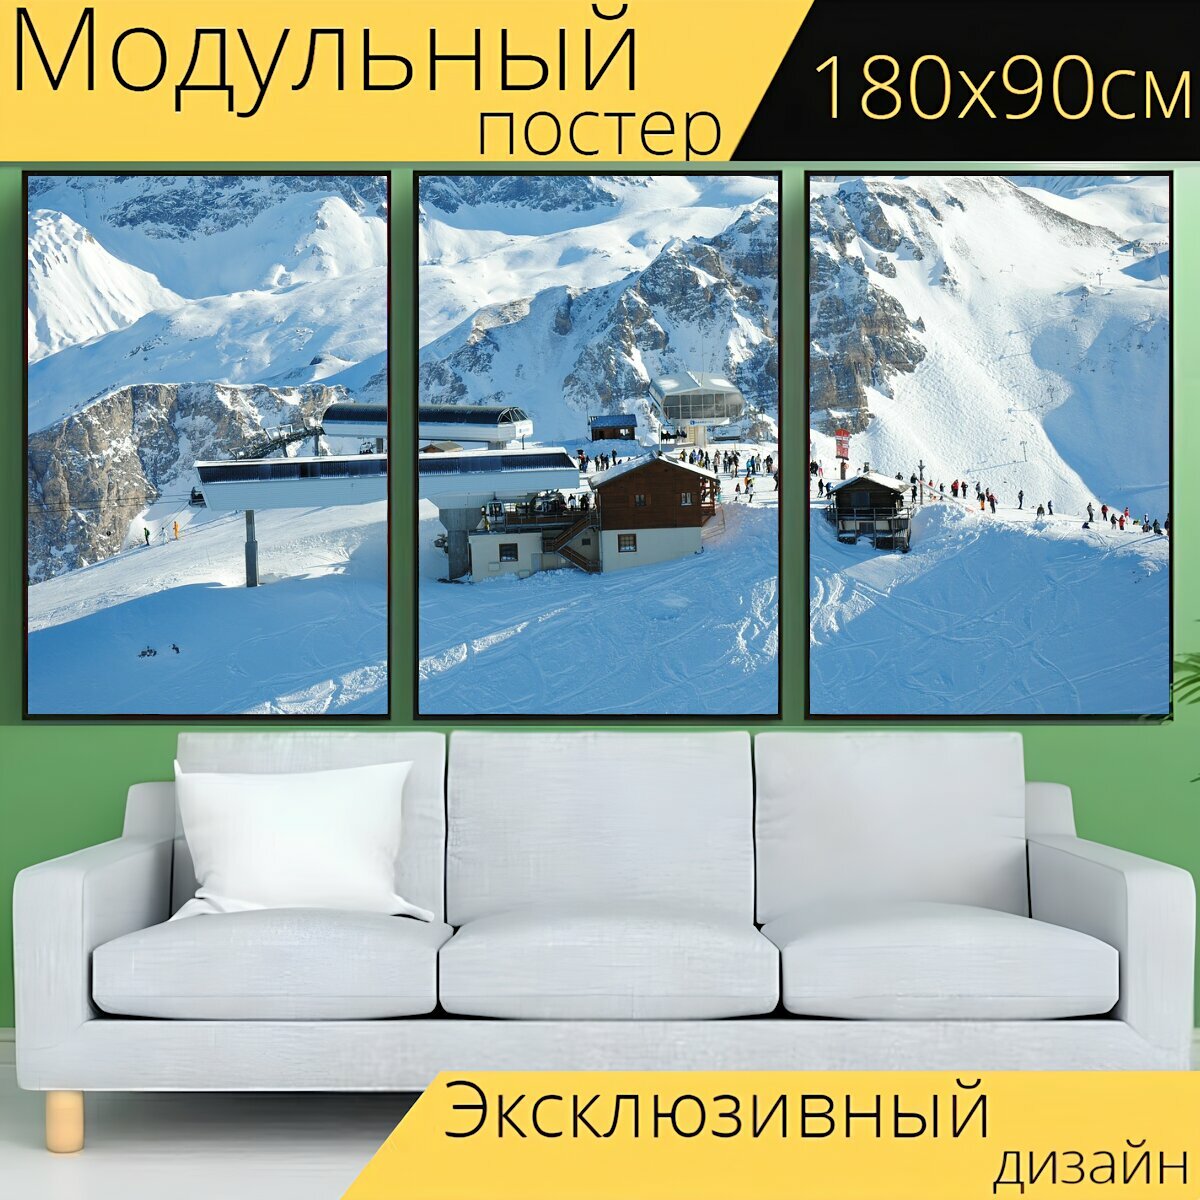 Модульный постер "Горные лыжи, кататься на лыжах, склон" 180 x 90 см. для интерьера